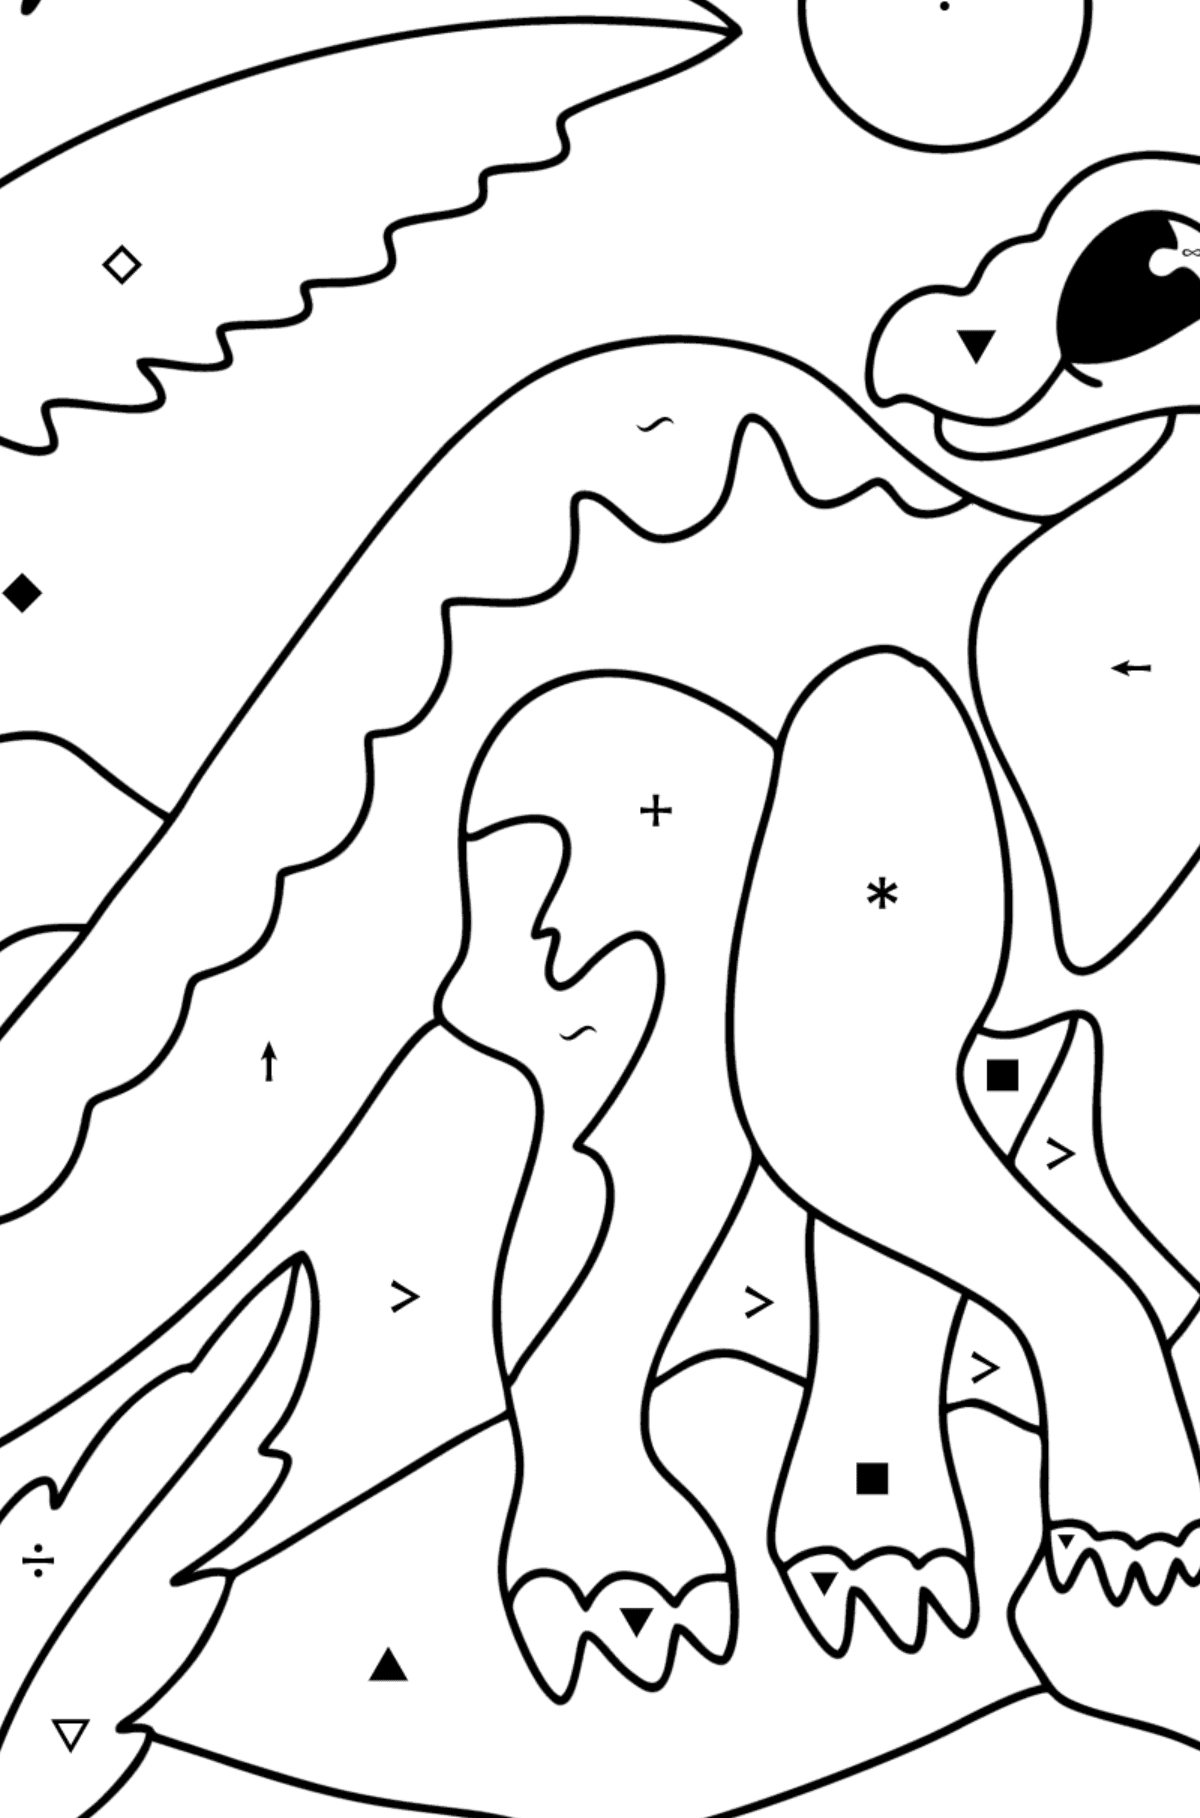 Dibujo de Iguanodonte para colorear - Colorear por Símbolos para Niños